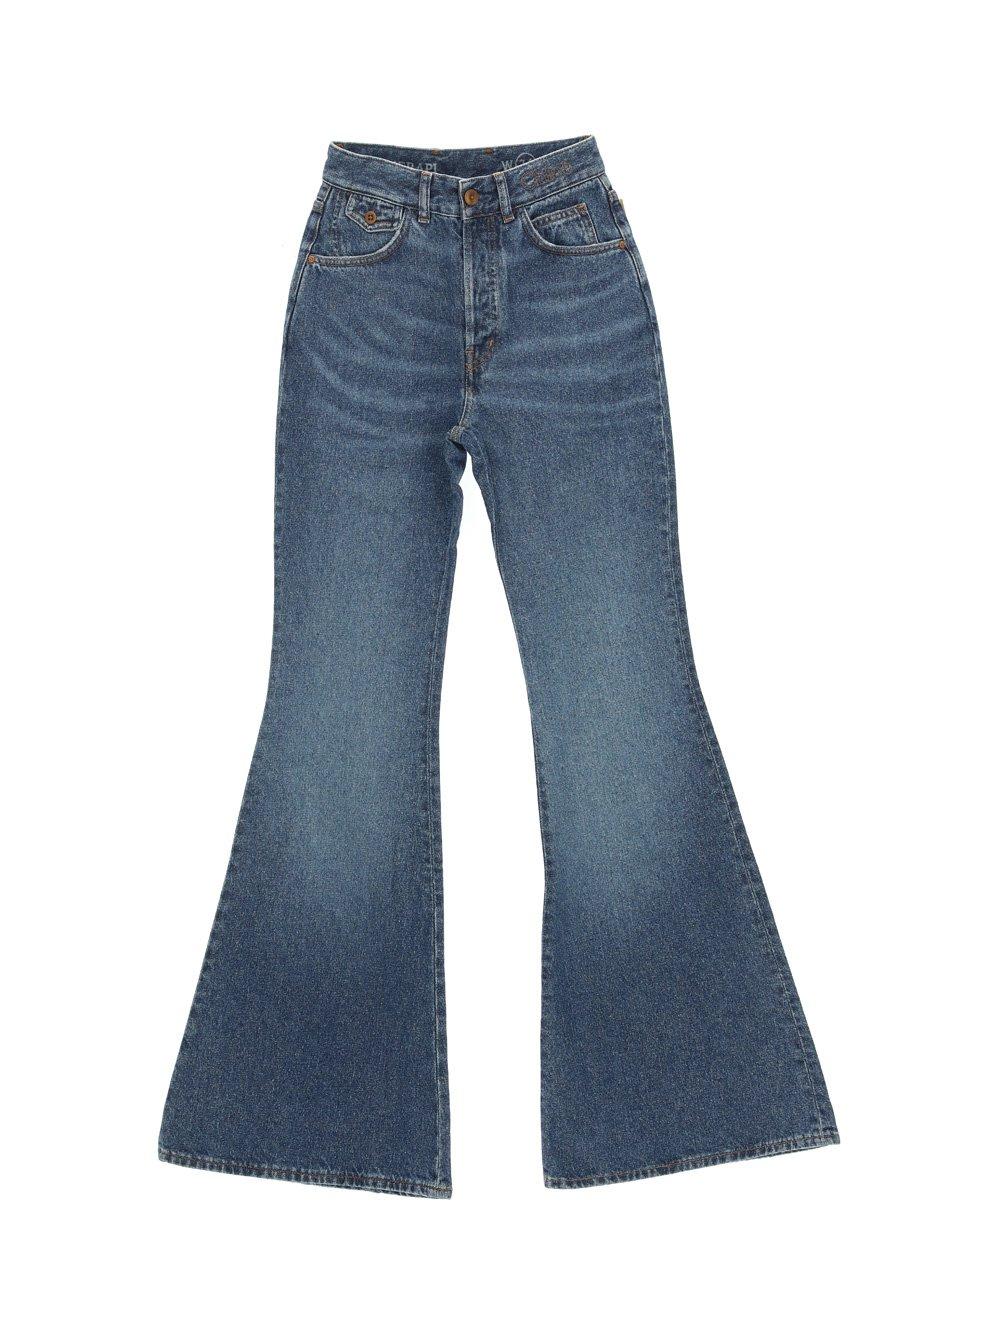 Chloé High Waist Flared Jeans